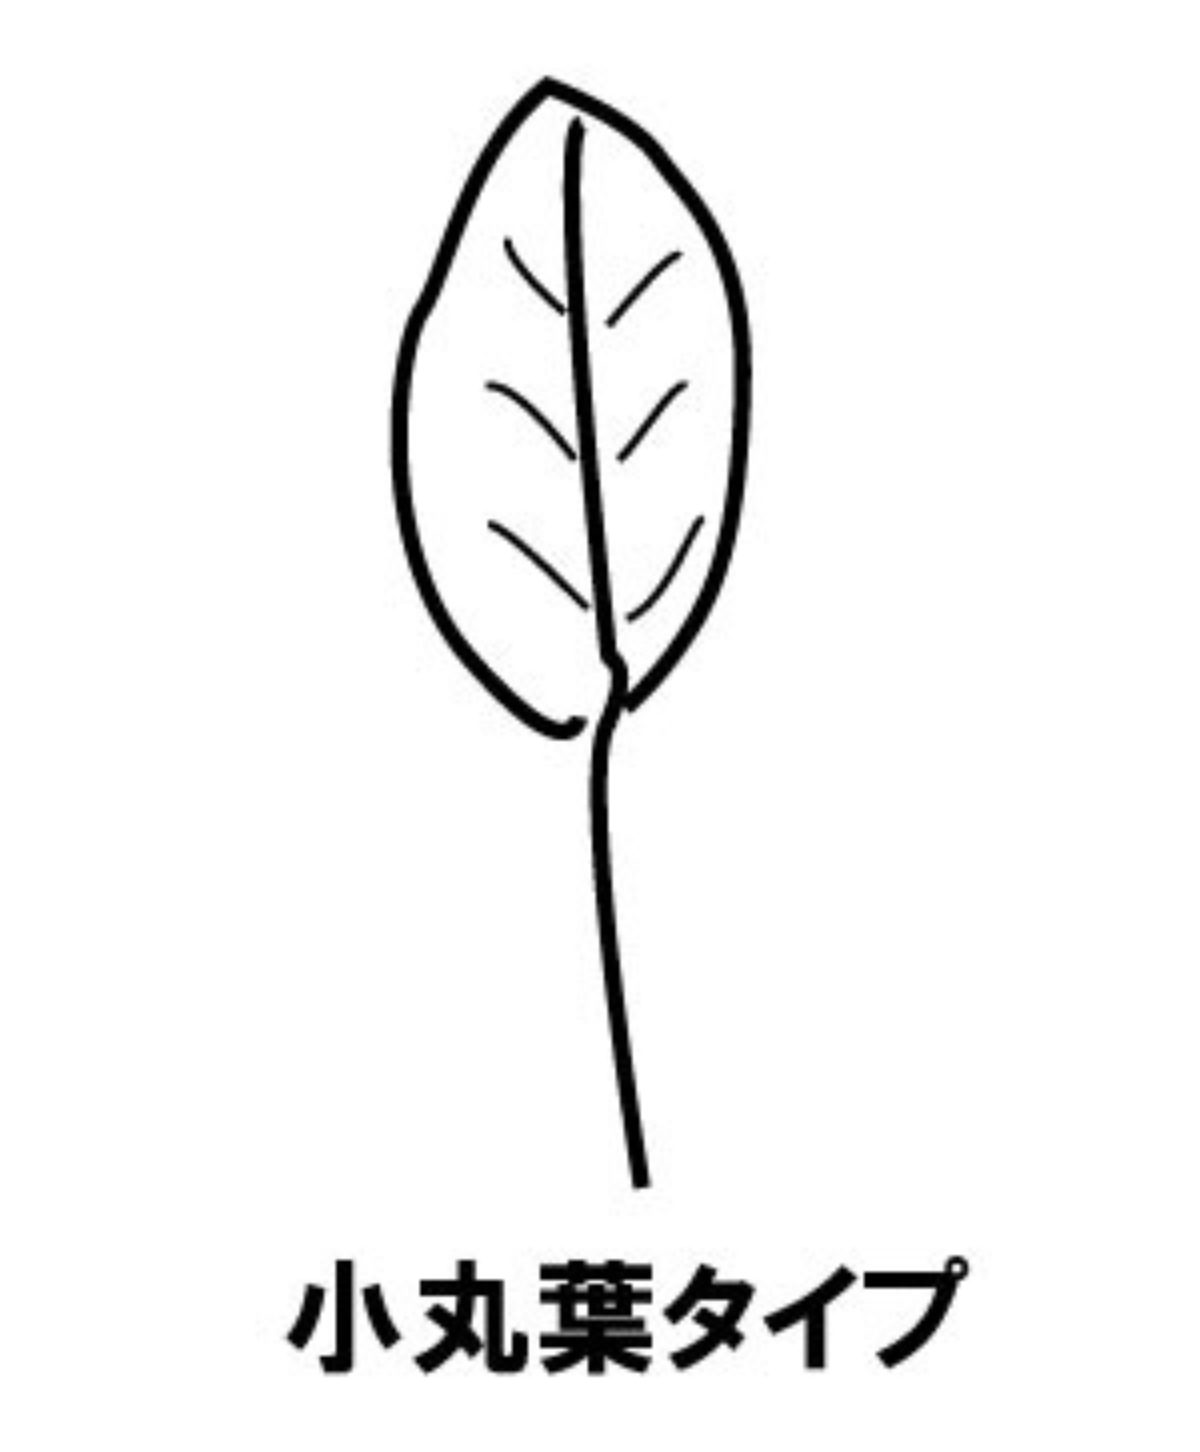 朝顔 アサガオ セイヨウアサガオ リュウキュウアサガオ の葉 茎 根 葉の形 種類 毛 ツルが伸びない ガーデニングサプリの壺